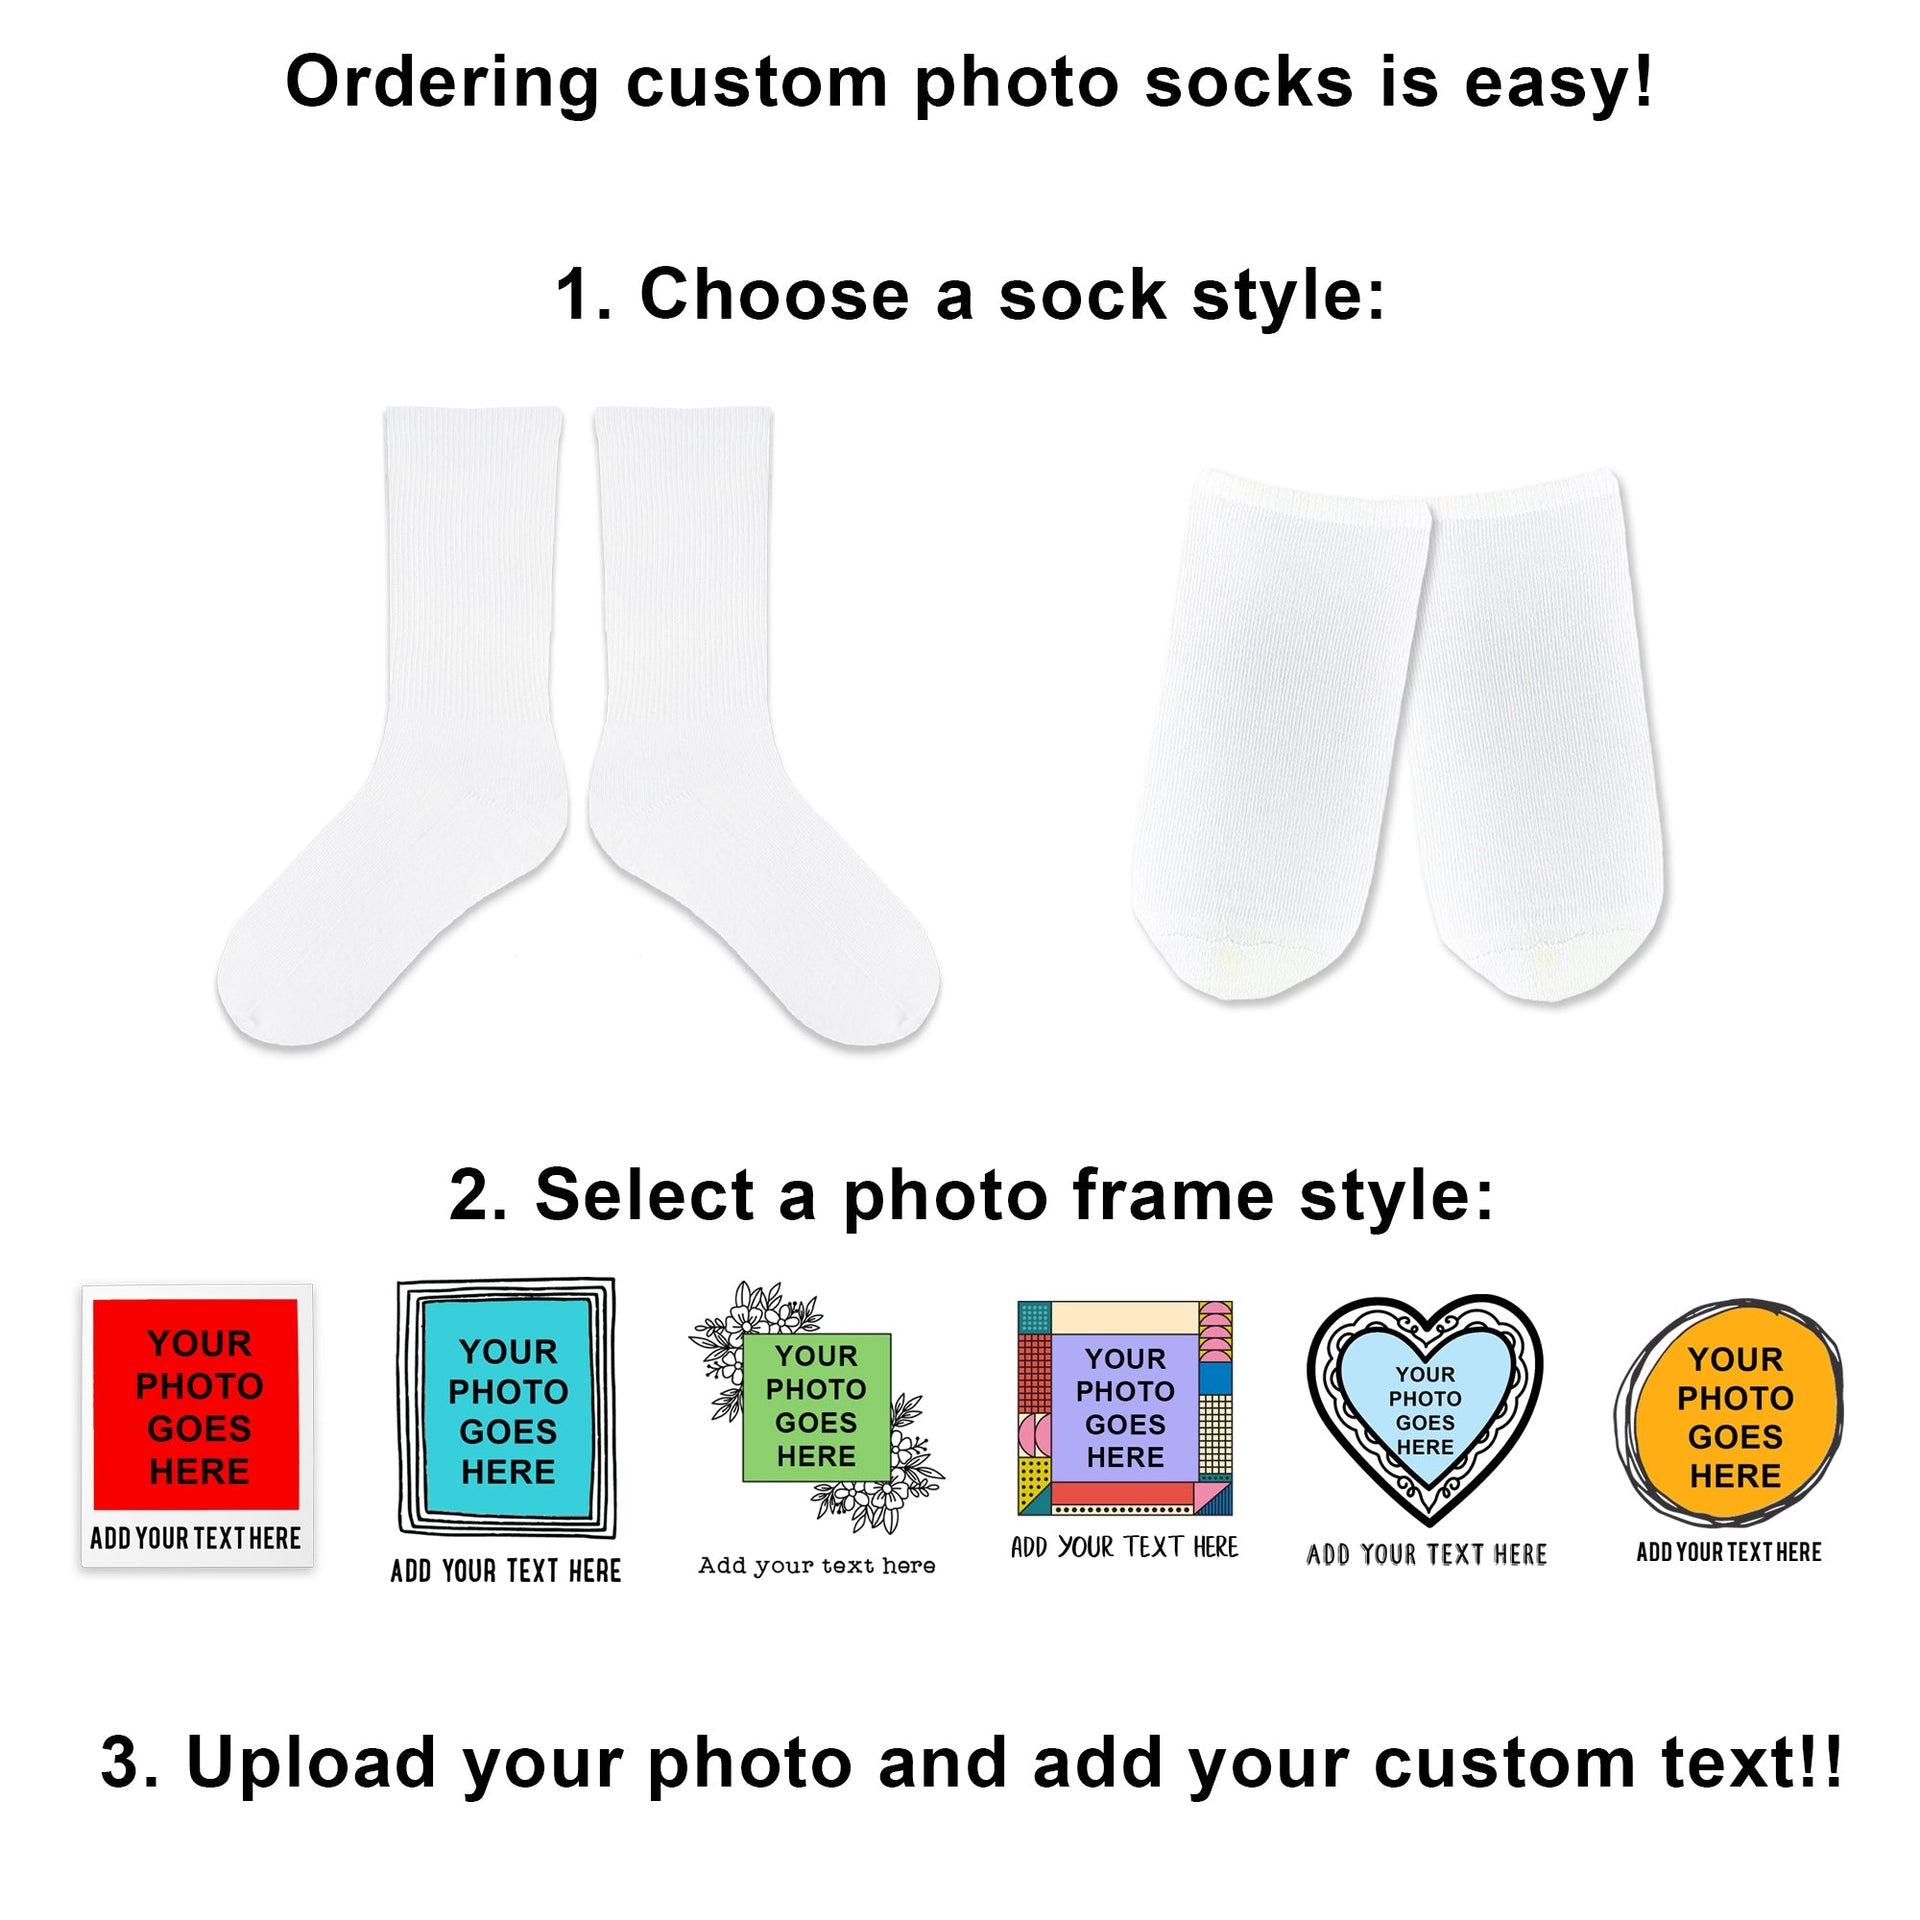 Guide to ordering custom photo socks frame designs.